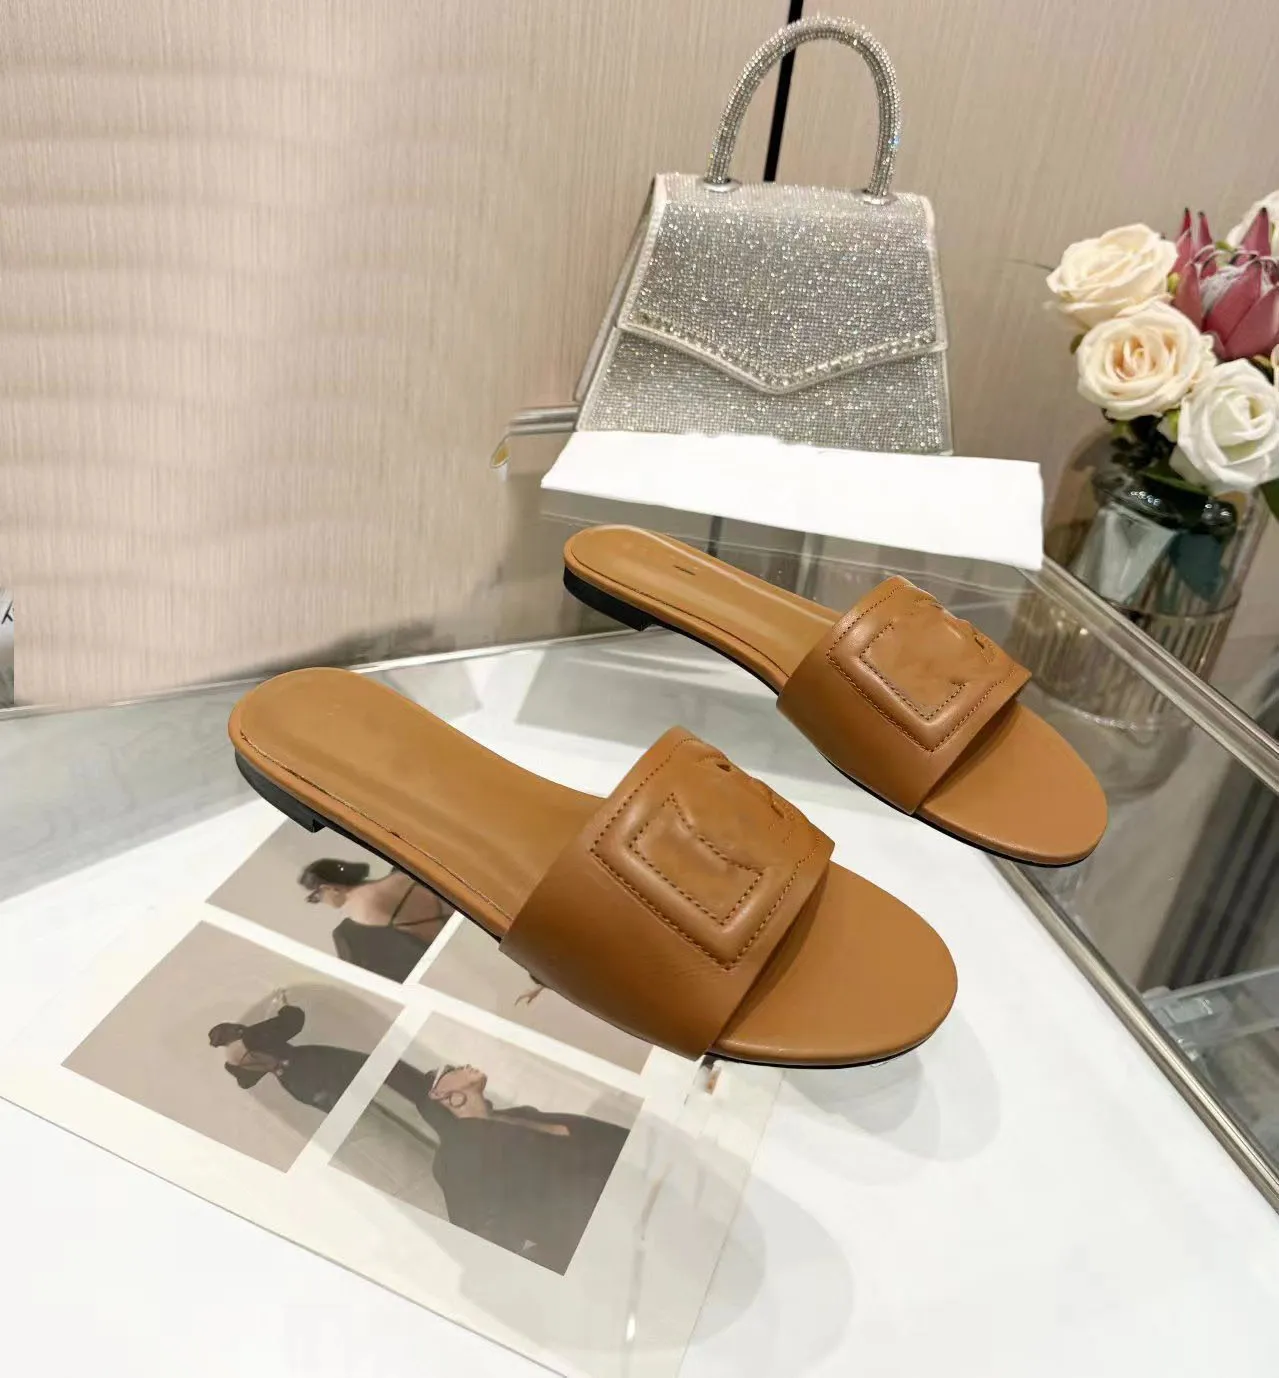 Toppkvalitet D designer g sandaler berömda läder tofflor låga klackskor lyxiga sandale mode kvinnor glider 654645